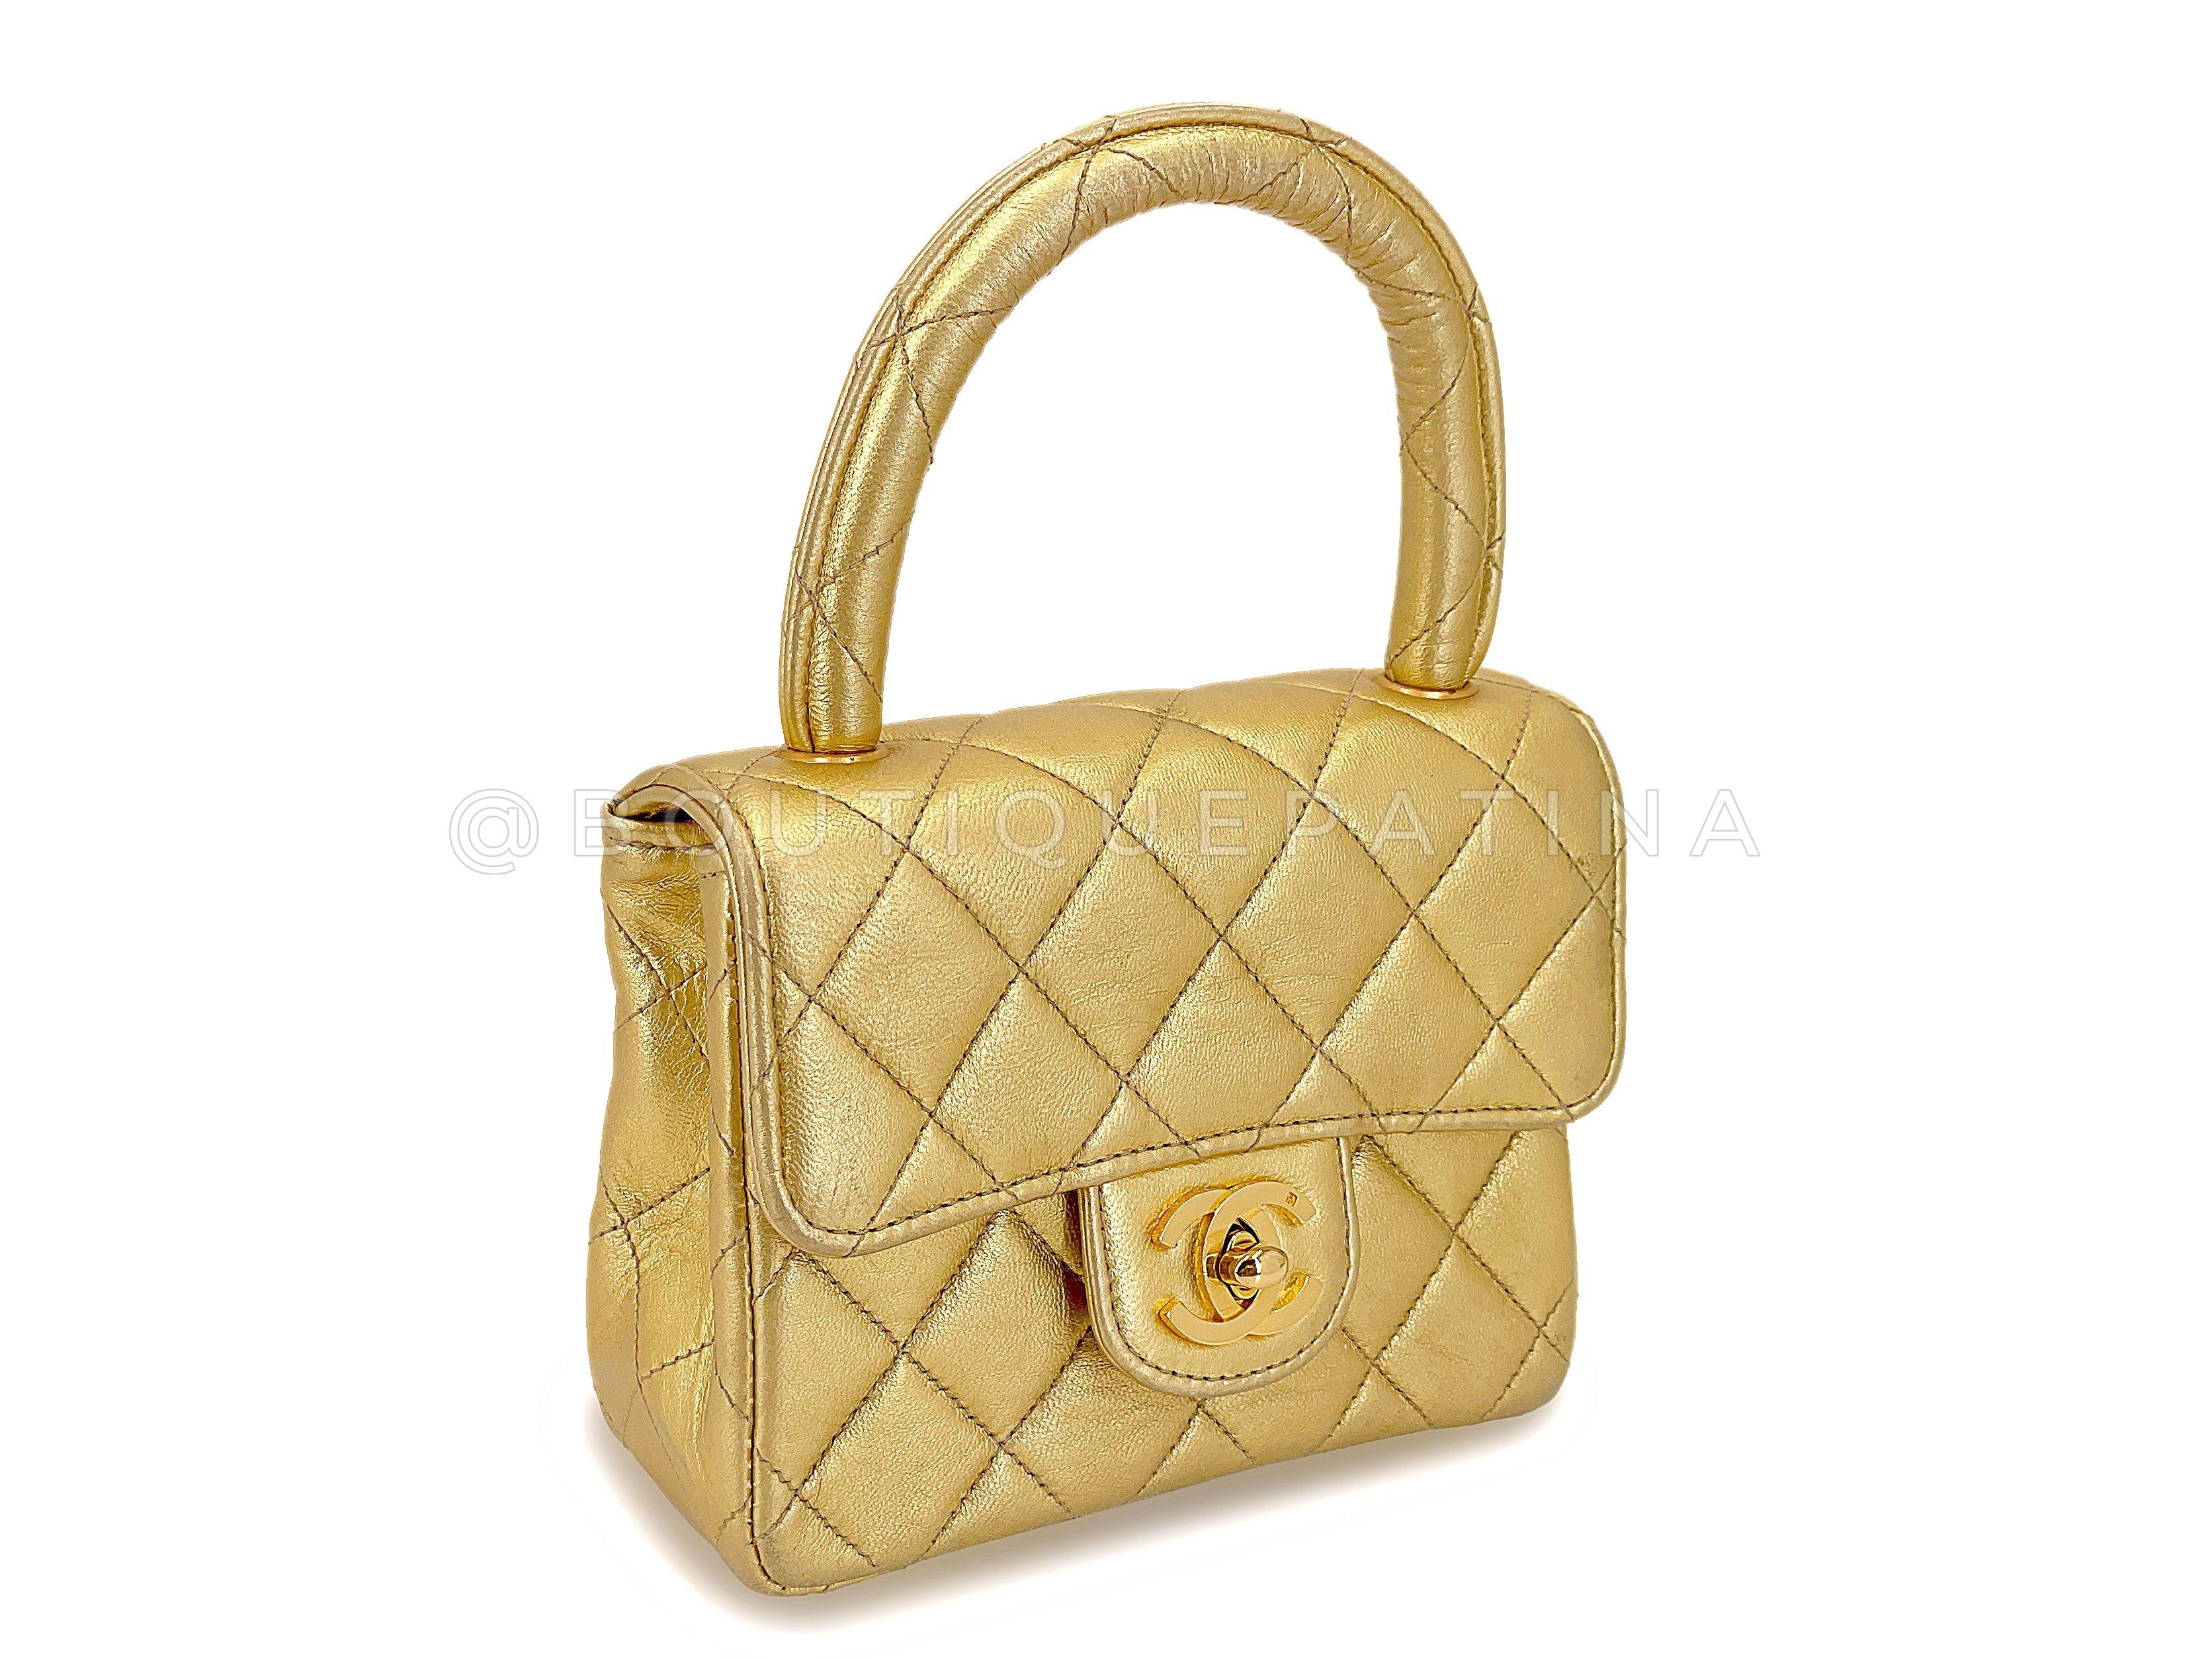 Article du magasin : 67404
Le chouchou des collectionneurs de Chanel vintage est ce mini sac kelly 